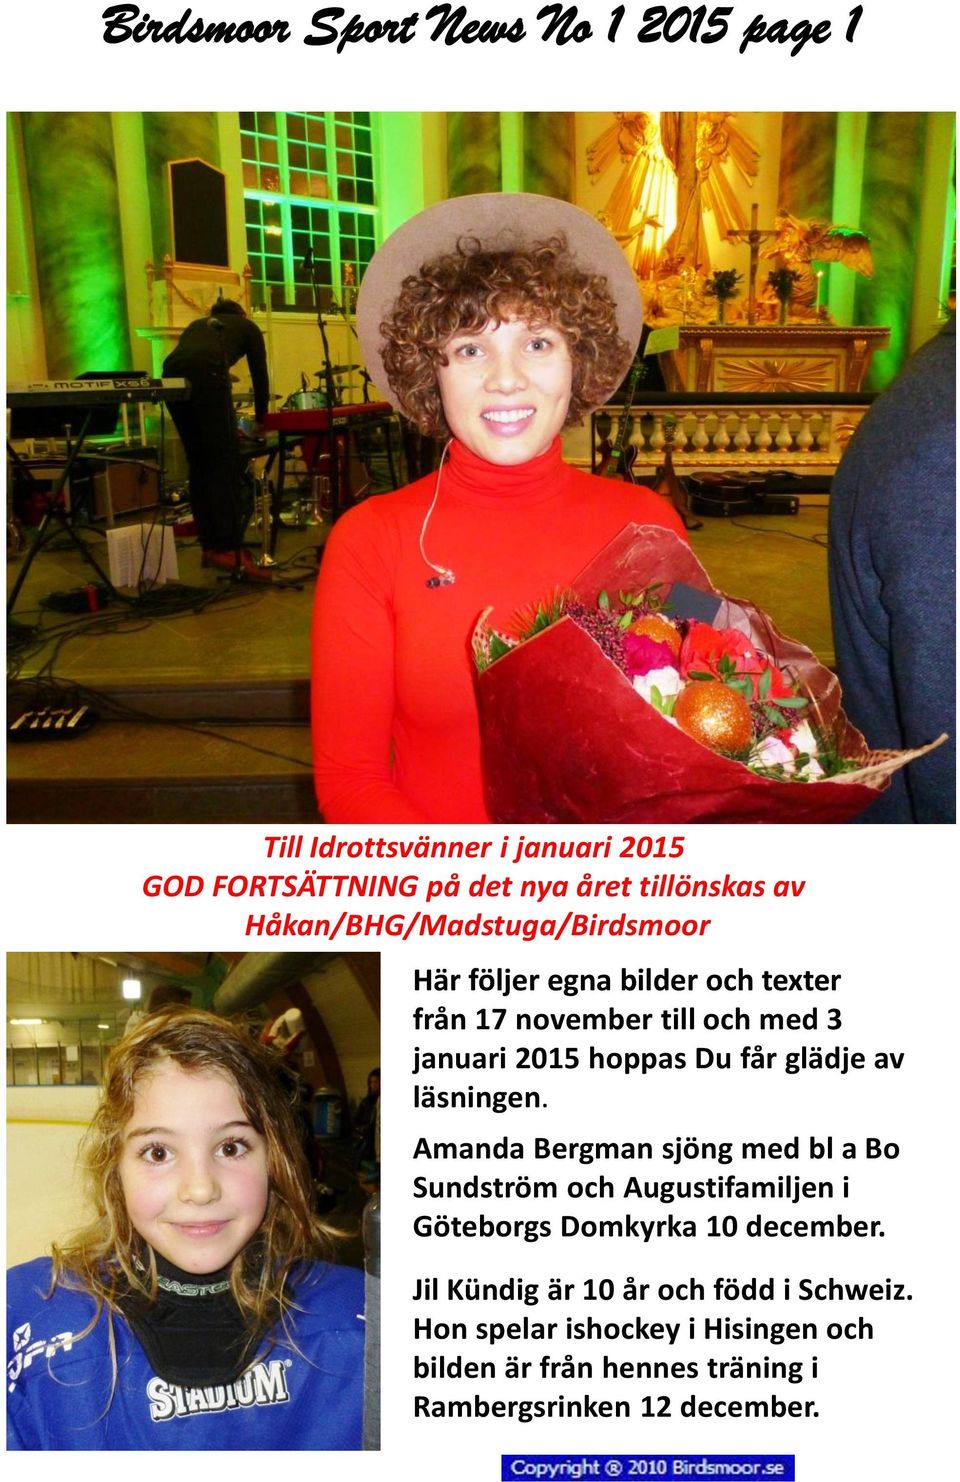 glädje av läsningen. Amanda Bergman sjöng med bl a Bo Sundström och Augustifamiljen i Göteborgs Domkyrka 10 december.